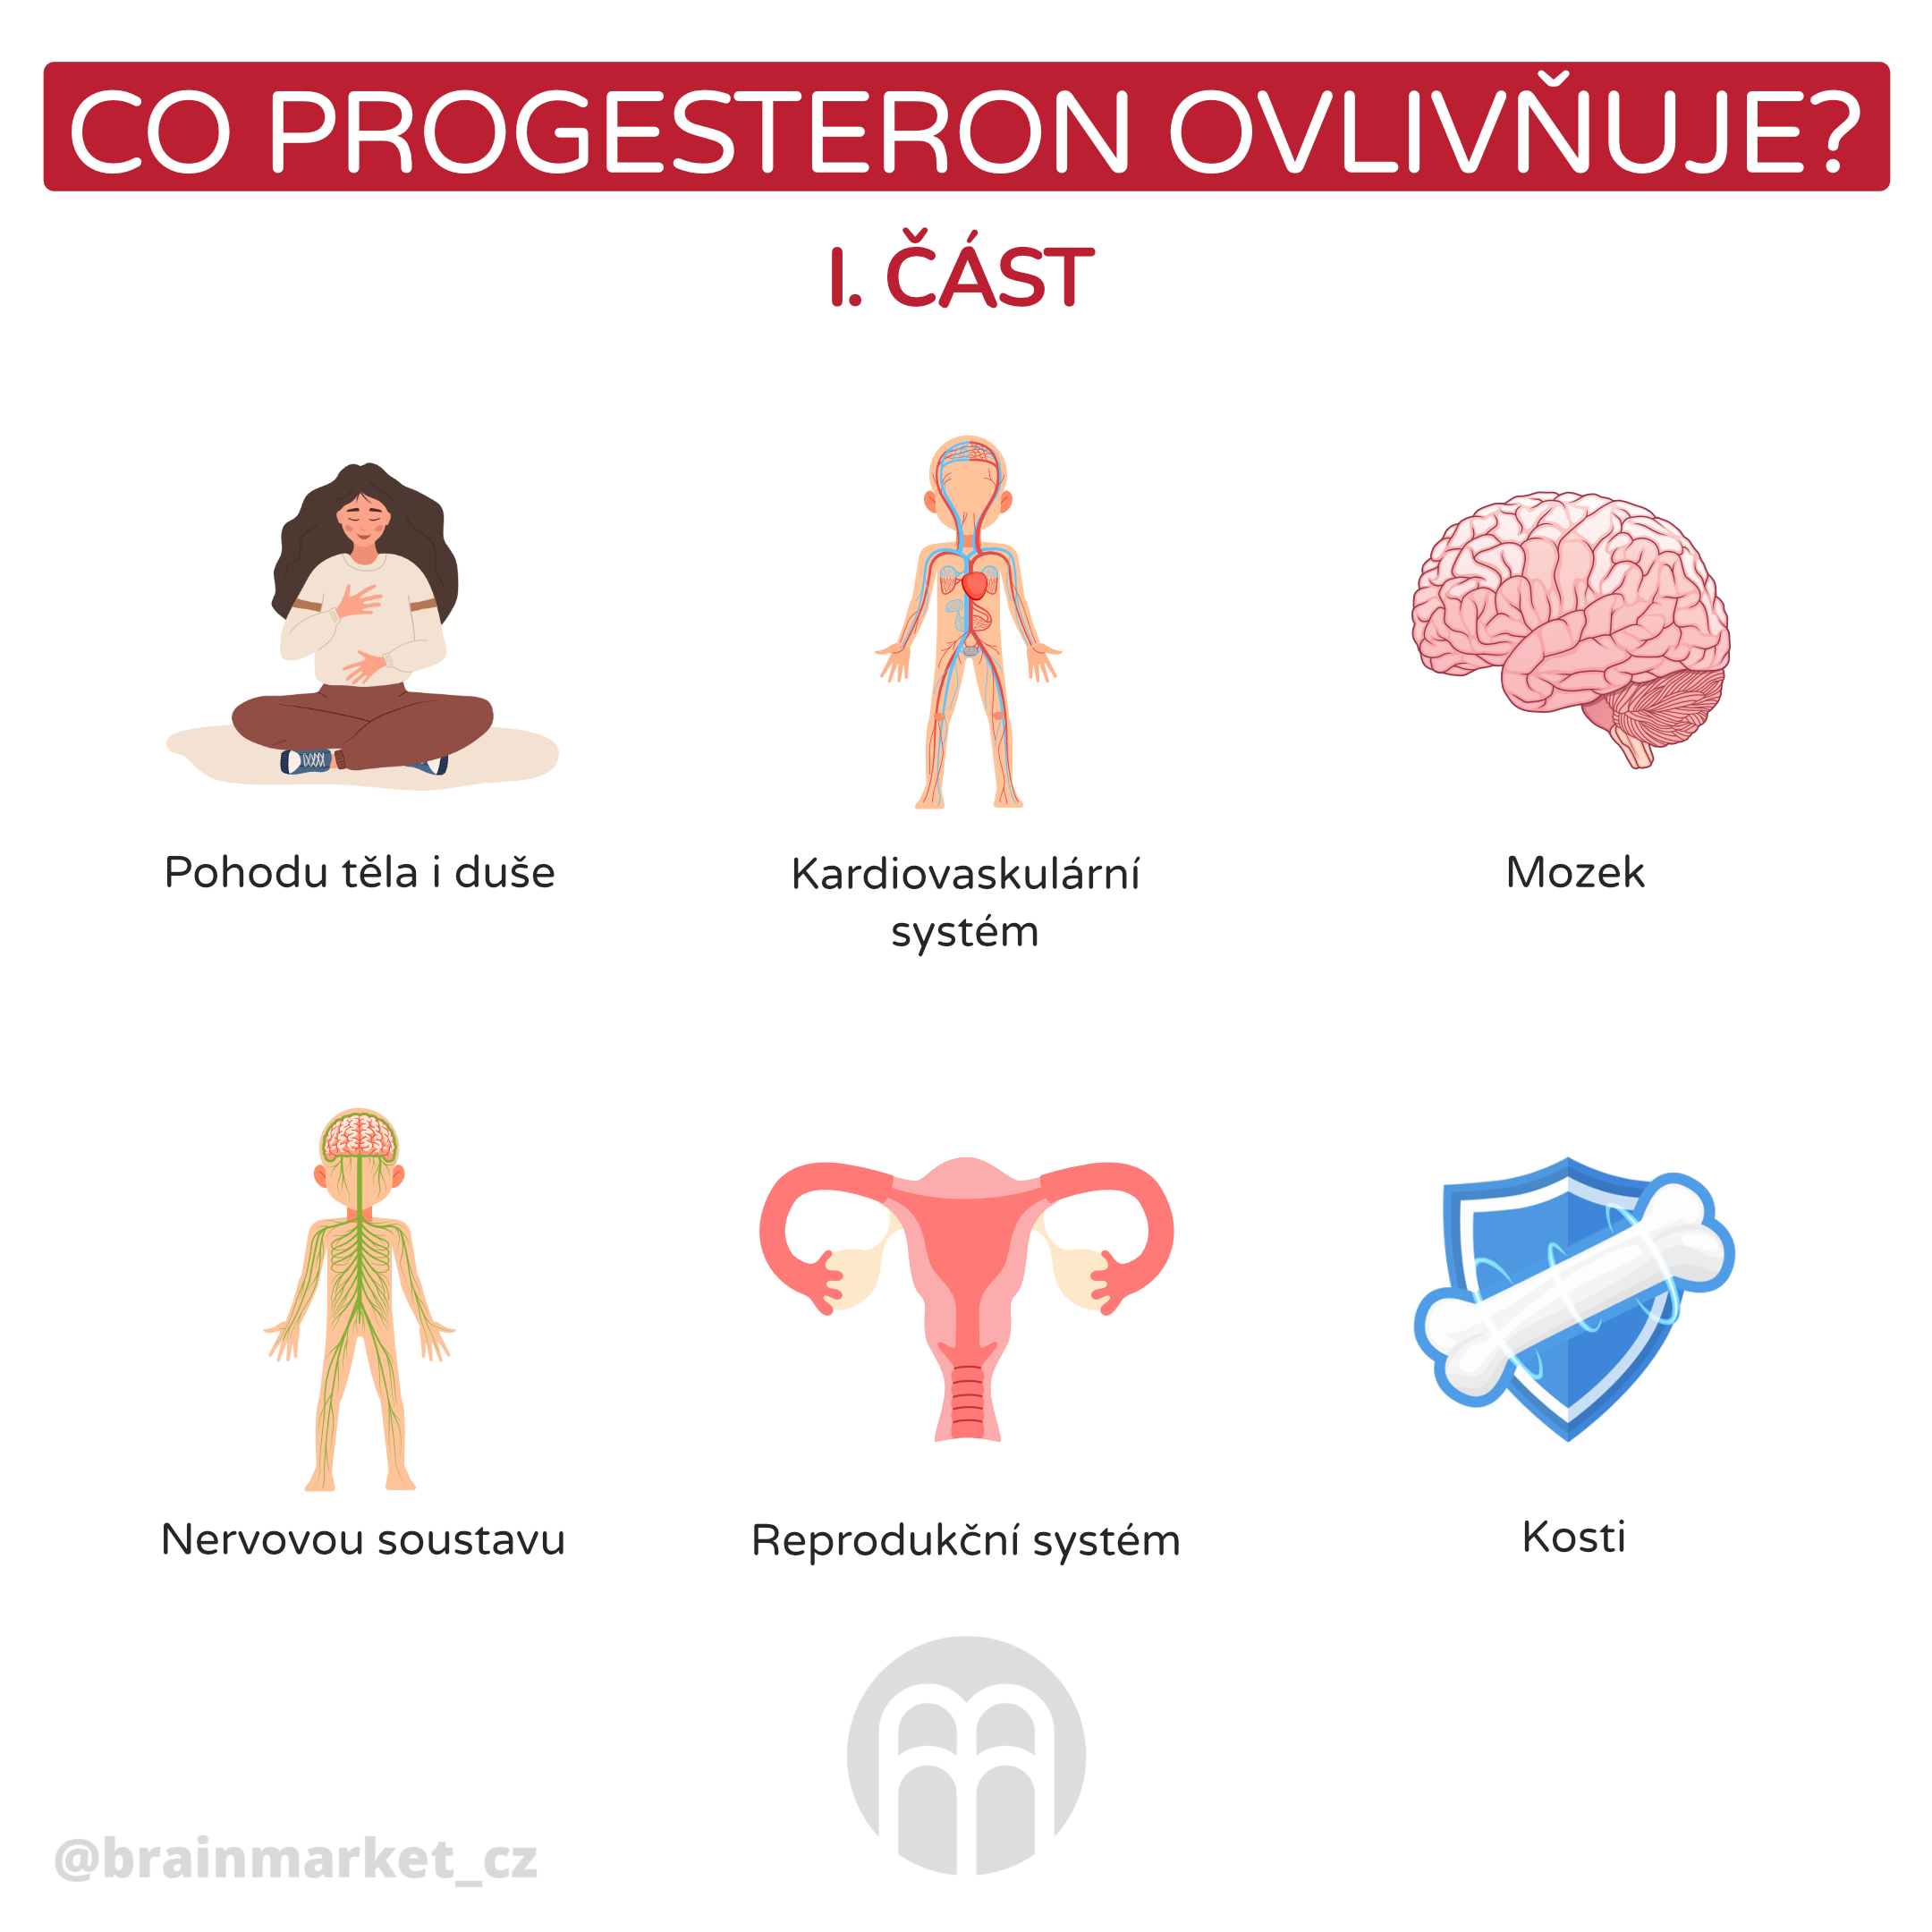 Co je to progesteron?